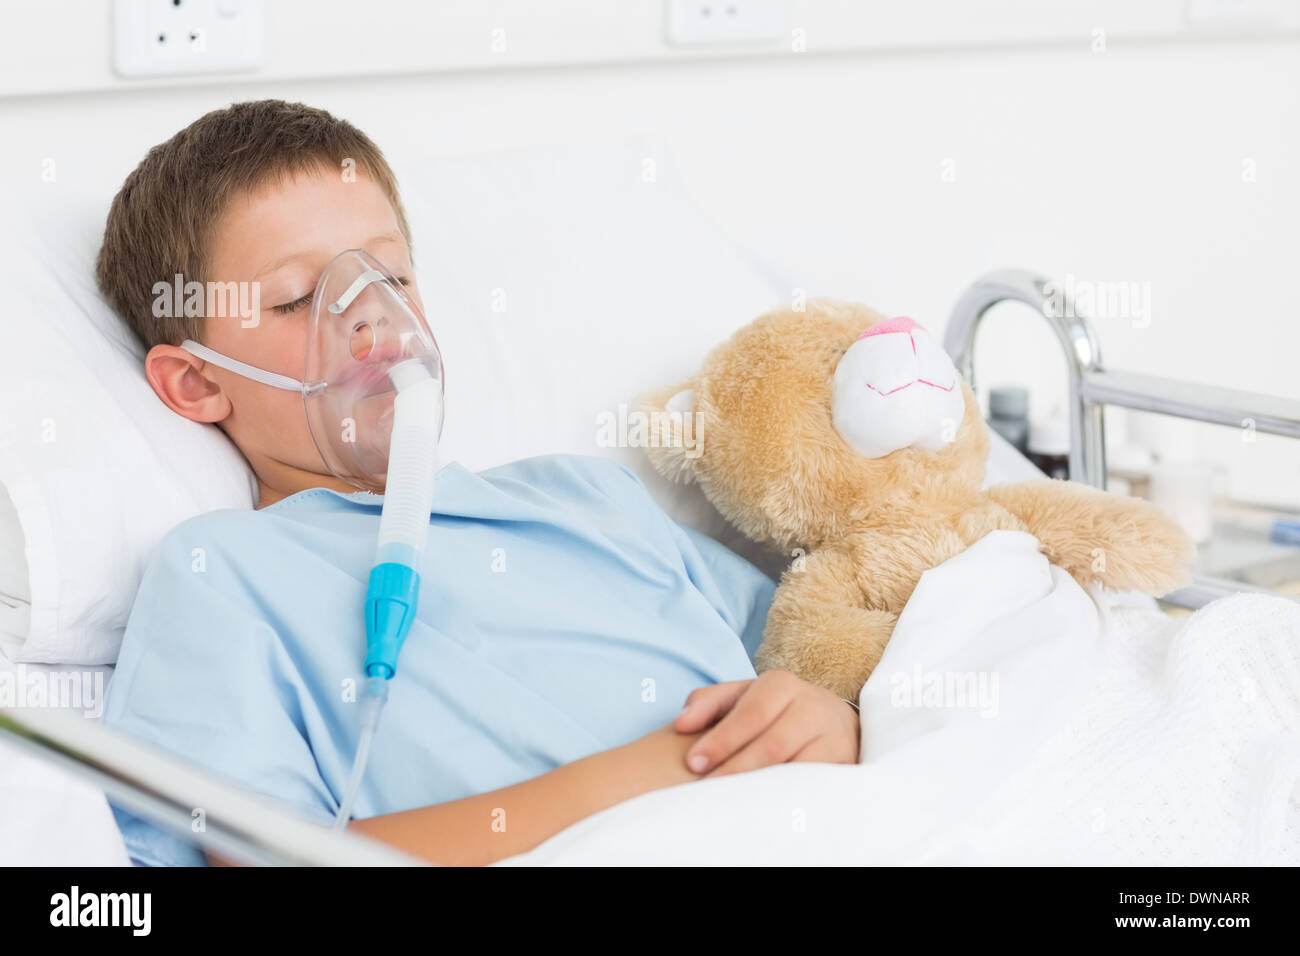 Junge mit Sauerstoff Maske schlafen neben Teddy bear Stockfotografie - Alamy